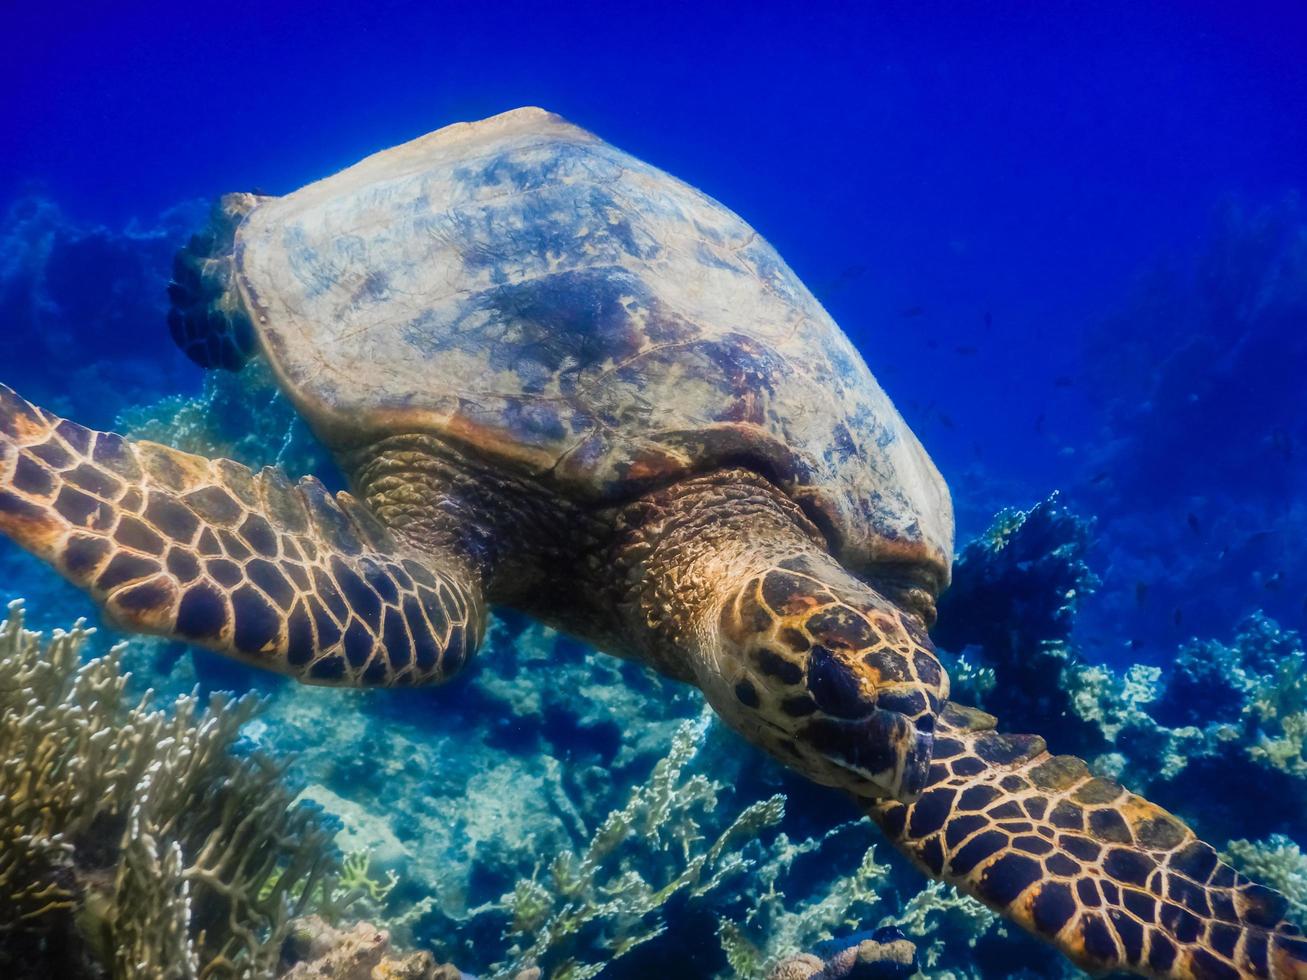 tartaruga marinha verde nadando sobre corais e águas azuis profundas foto